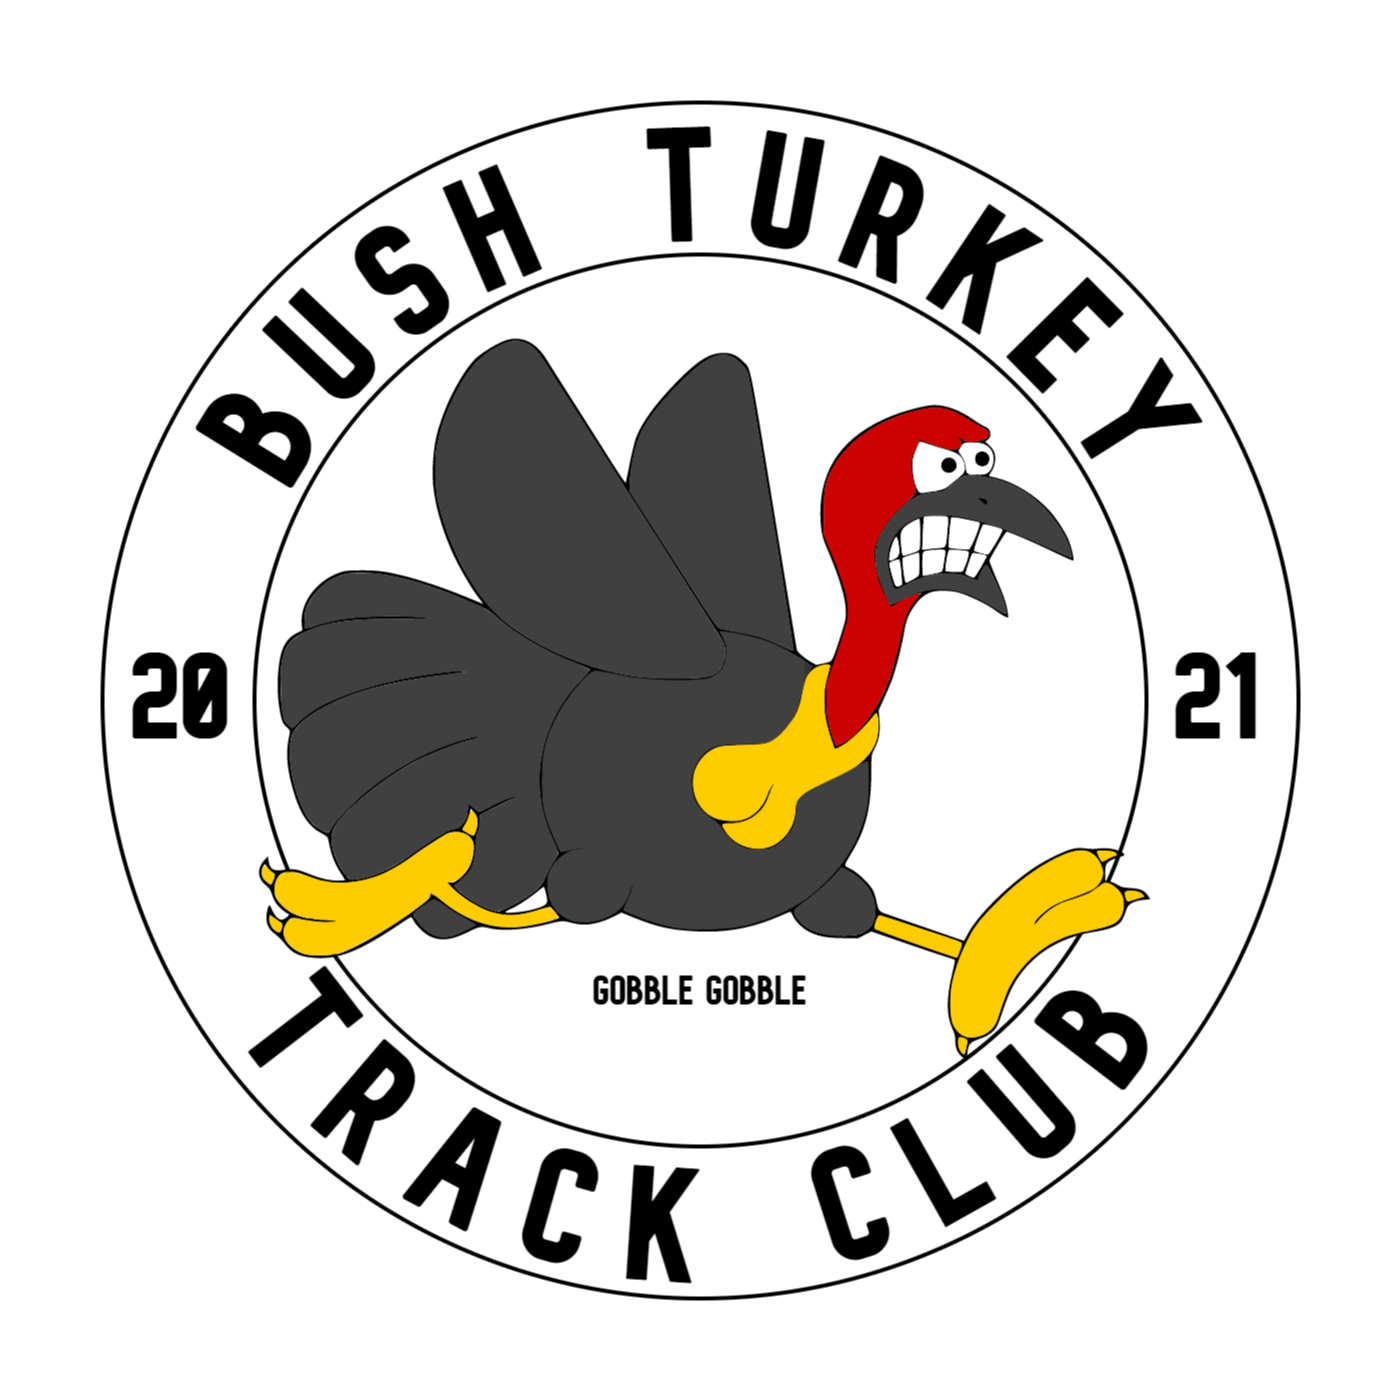 Bush Turkey Track Club